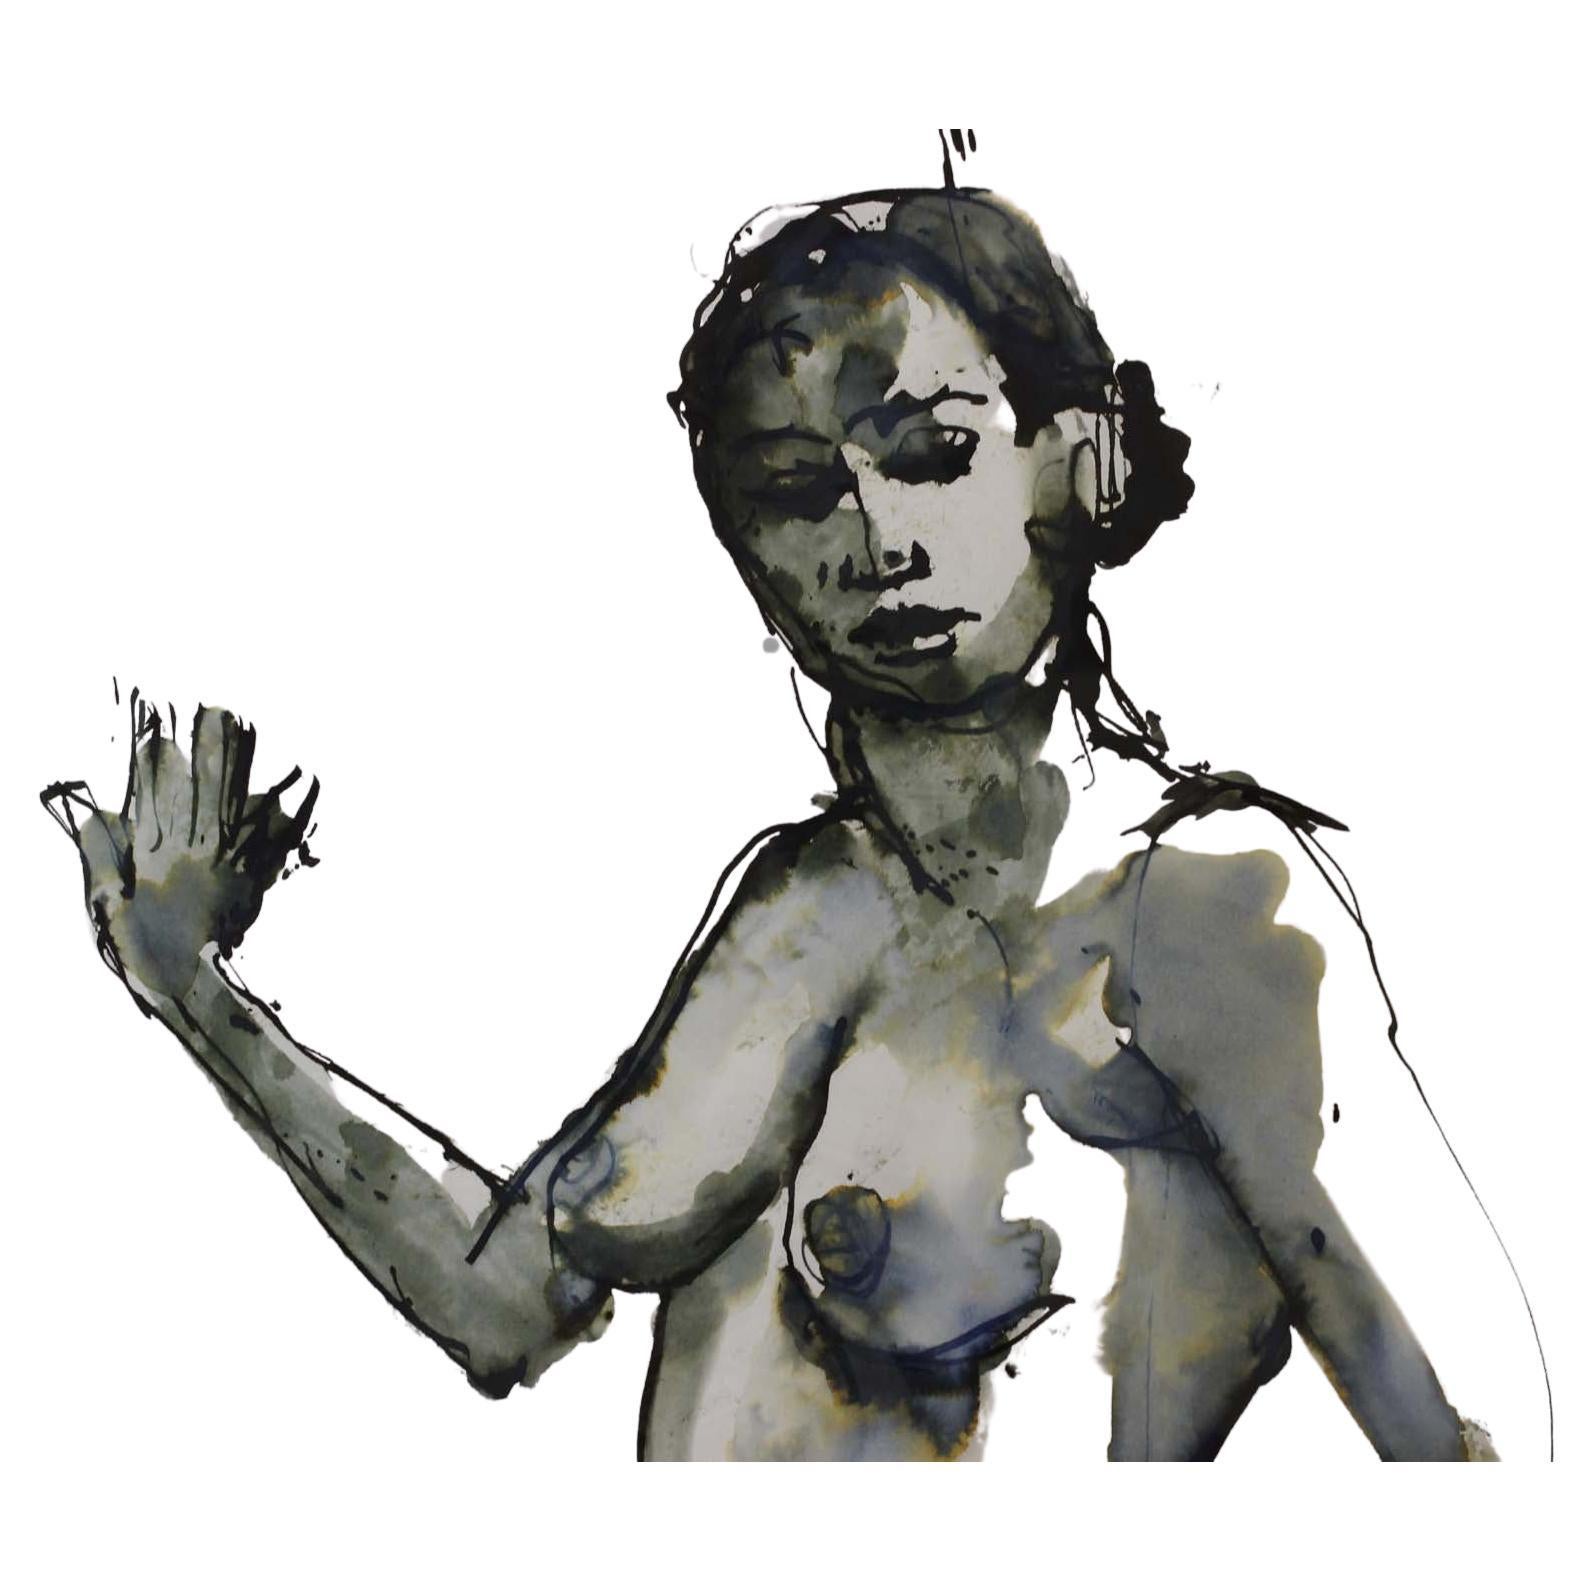 Lewis Evany artiste Gouache peinture ' Femme nue'

Signé à la main dans le coin droit.

Dimensions :

Longueur x Largeur : 59 x 79 cm 
Longueur x largeur x profondeur : 80 x 100 x 0,5 cm 

Poids approximatif : 1 KG
 
Condition : Usage